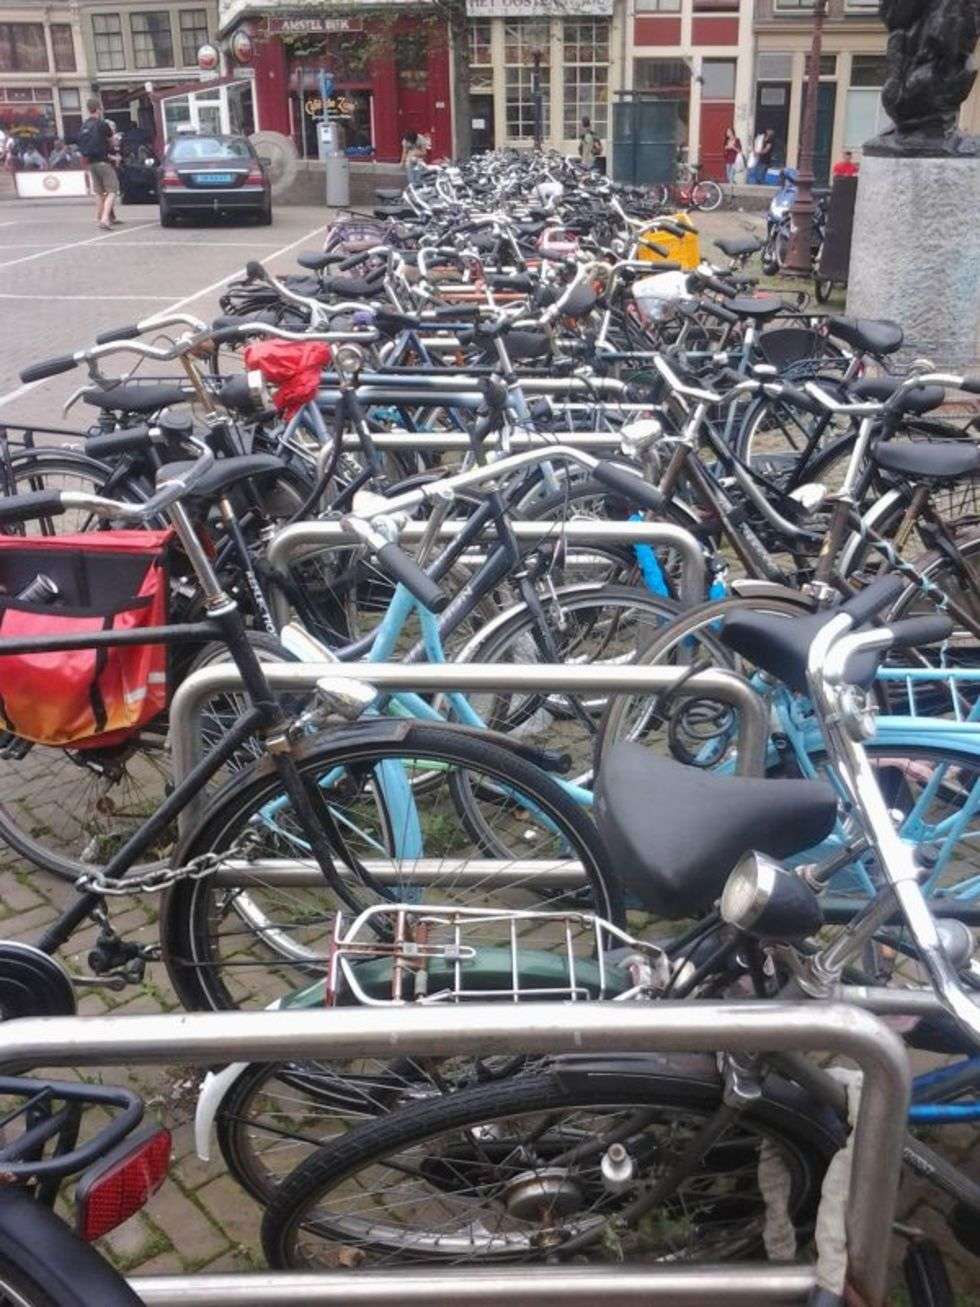  Zdjęcie zostało zrobione podczas przejażdżek do
Amsterdamu. Startowałem z miejscowości Aalsmeer, gdzie pracowałem i mieszkałem, przejeżdżałem przez Park Amsterdamski (Amsterdamse Bos) i znajdowałem się w południowej dzielnicy stolicy Holandii obrośniętej przez biznesowe wieżowce. Z tamtych rejonów niezbyt interesujących i zbyt oczywistych, jechałem zazwyczaj do centrum miasta. Szereg zaparkowanych rowerów pokazany na zdjęciu znajduję się niedaleko dzielnicy Czerwonych Latarnii i cofeeshopu The Jocker 